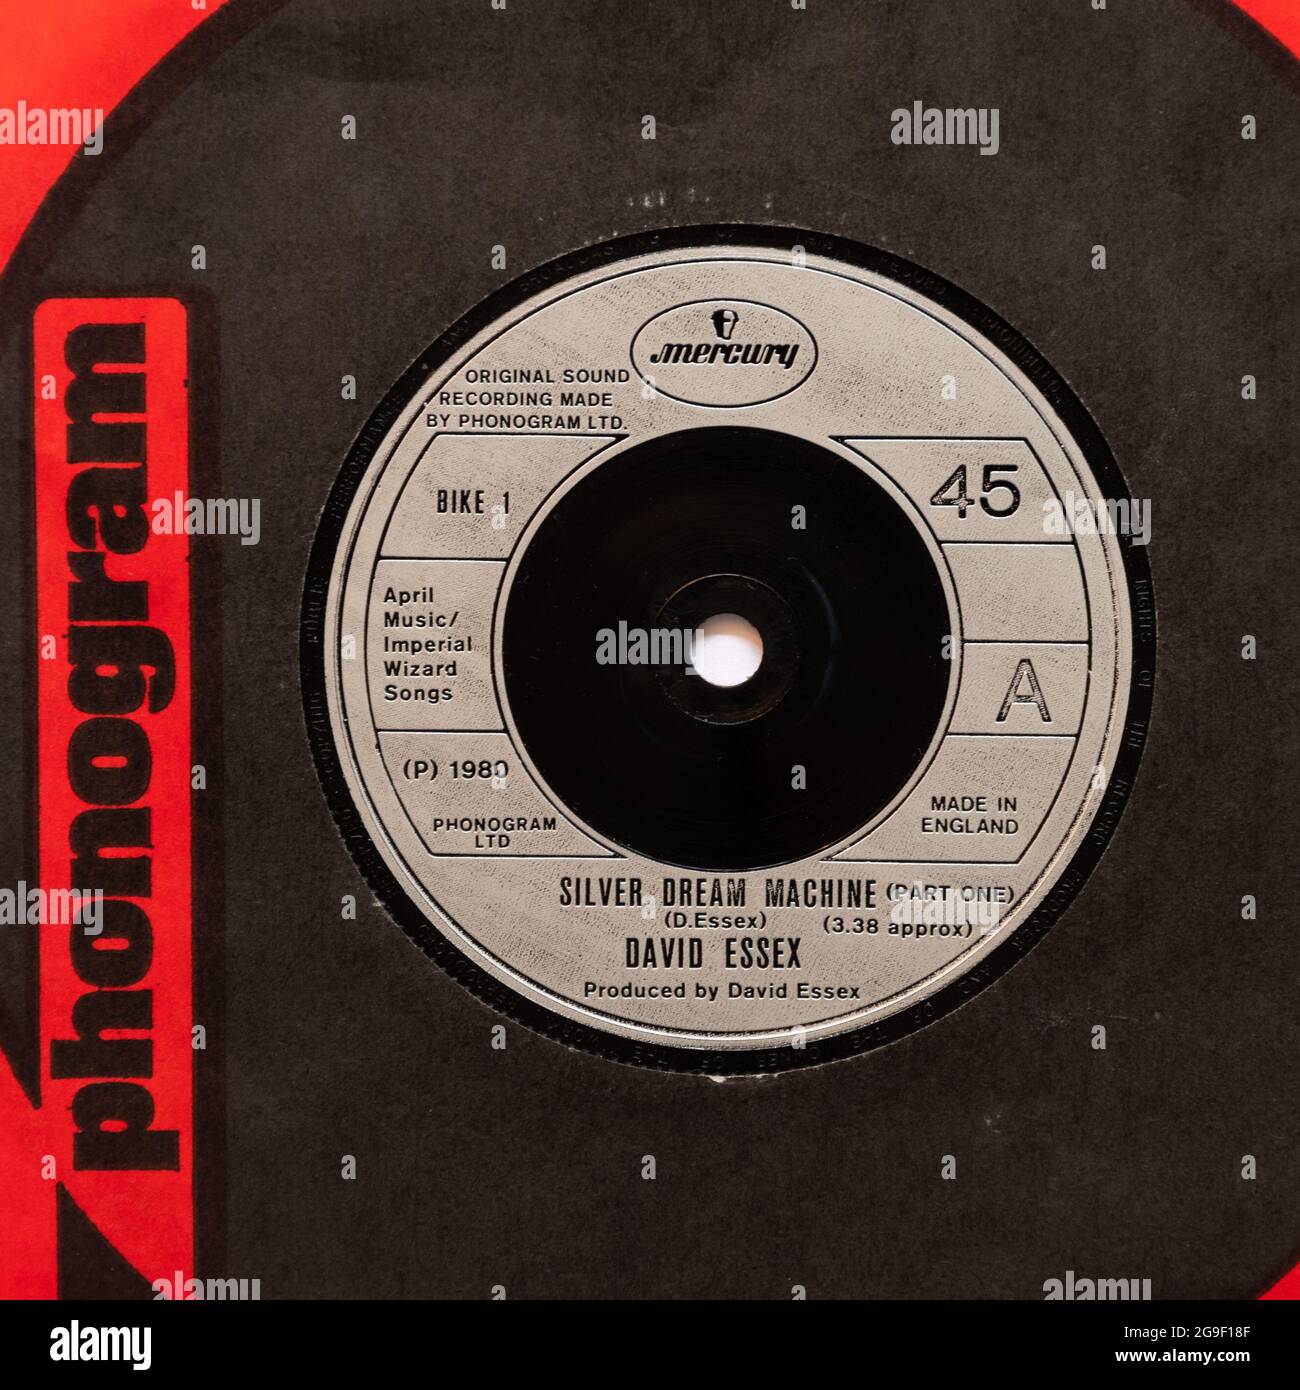 Silver Dream machine par David Essex, une photo de la 45' single vinyle 7 tr/min record en couverture Banque D'Images